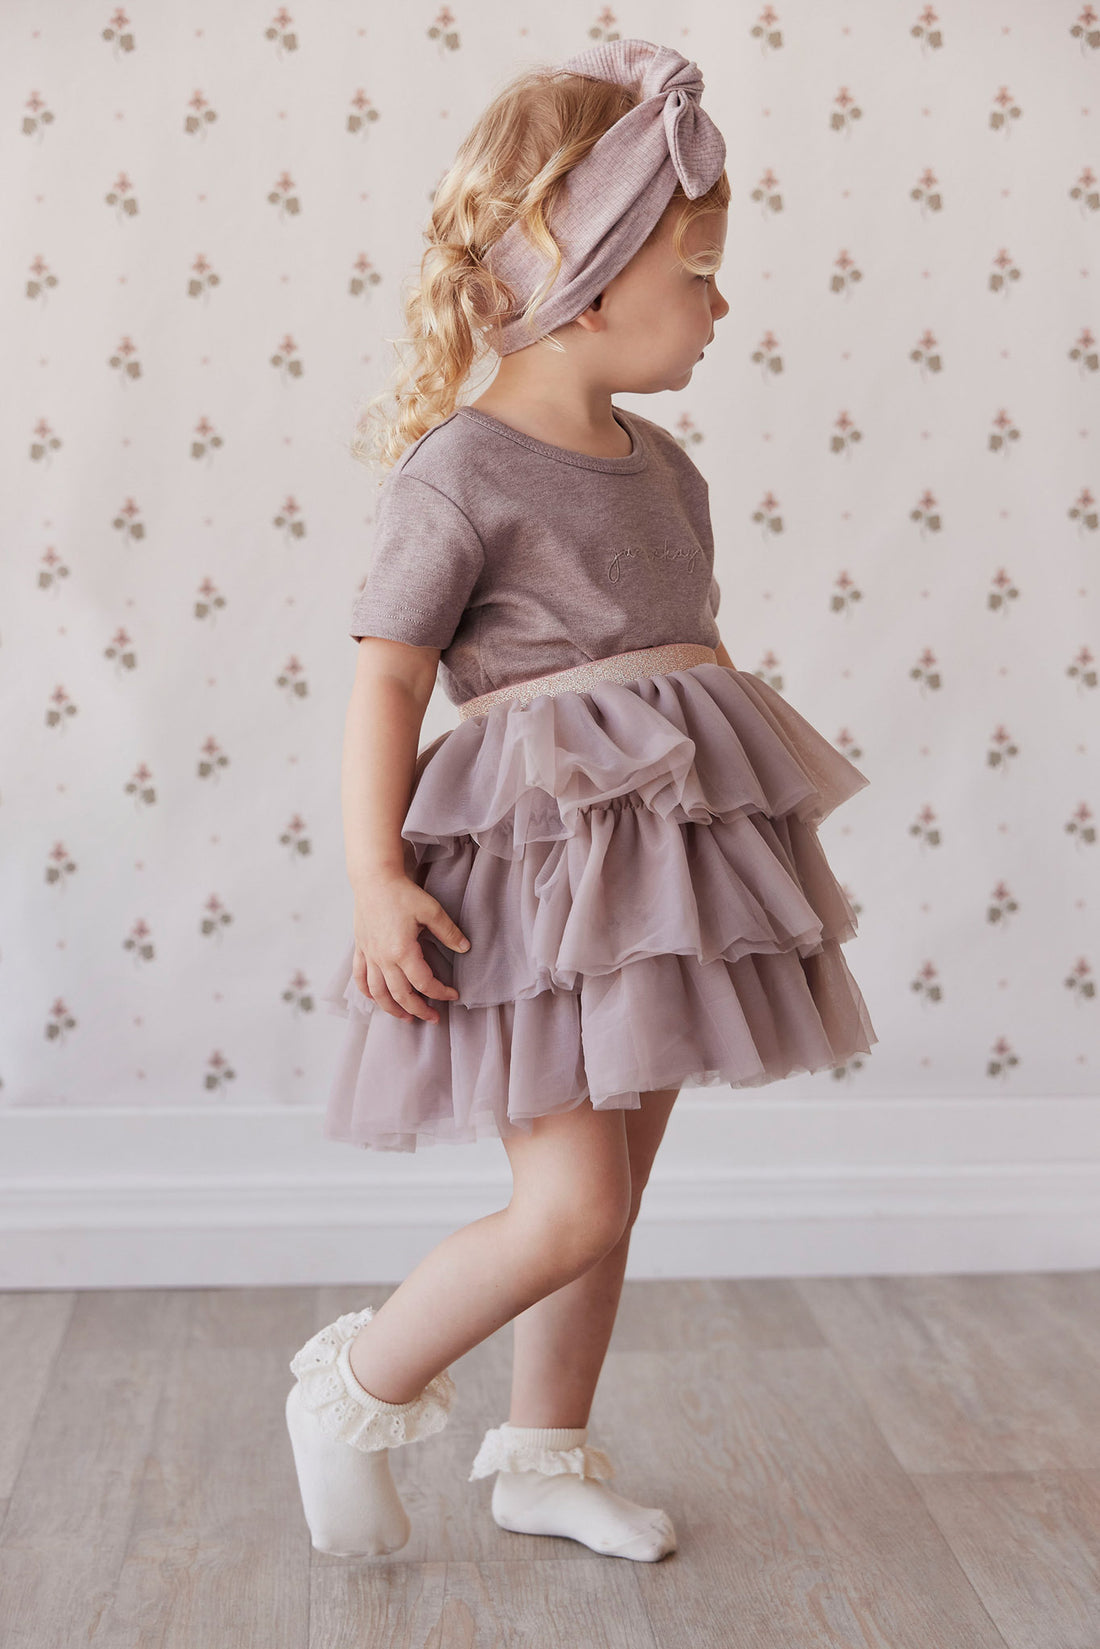 Valentina Tulle Skirt - Mushroom Childrens Skirt from Jamie Kay NZ